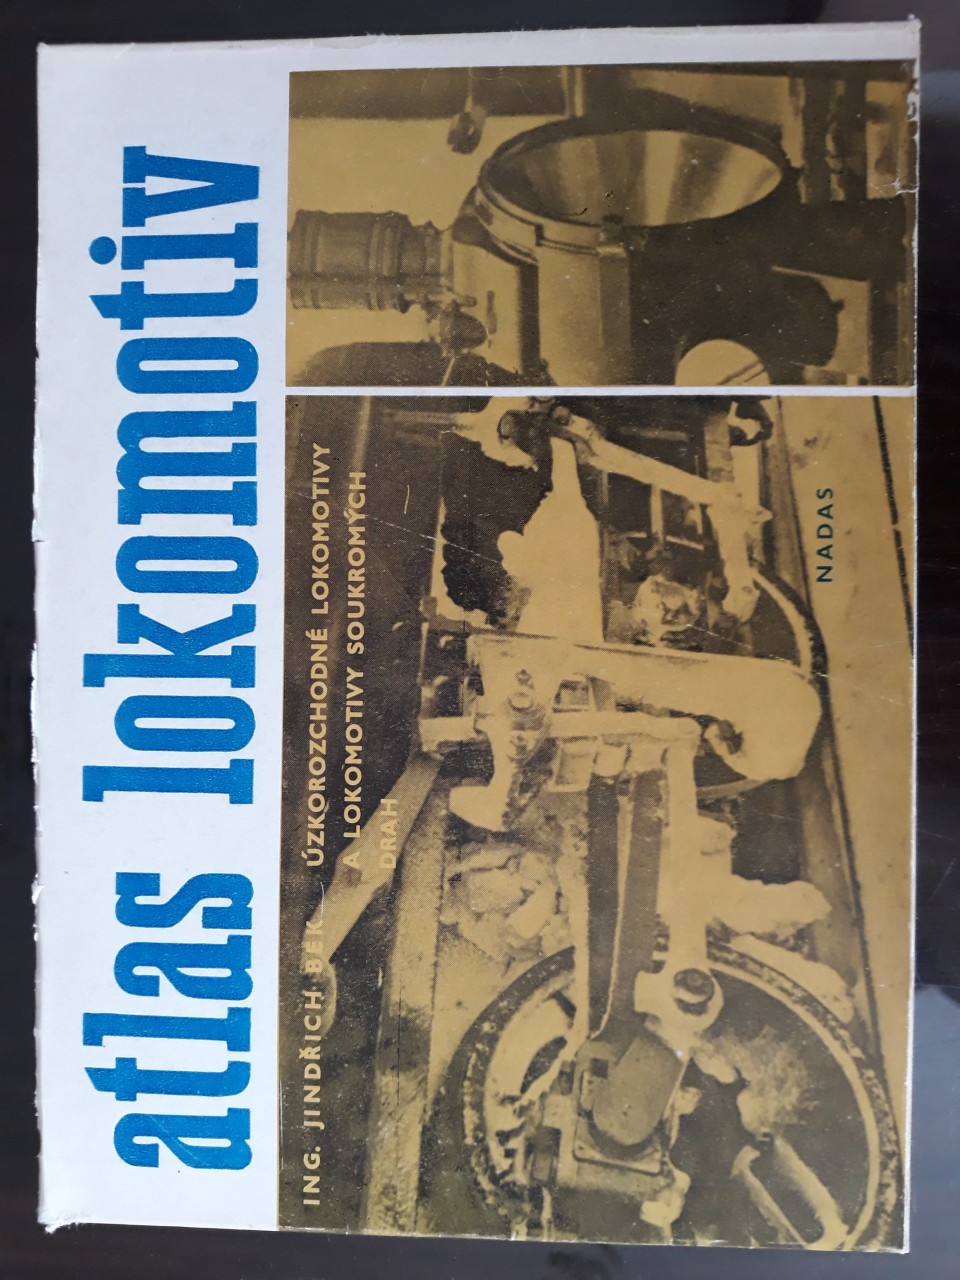 Atlas lokokomotiv - zkorozchodn loko a loko soukromch drah - Jindich Bek 1982